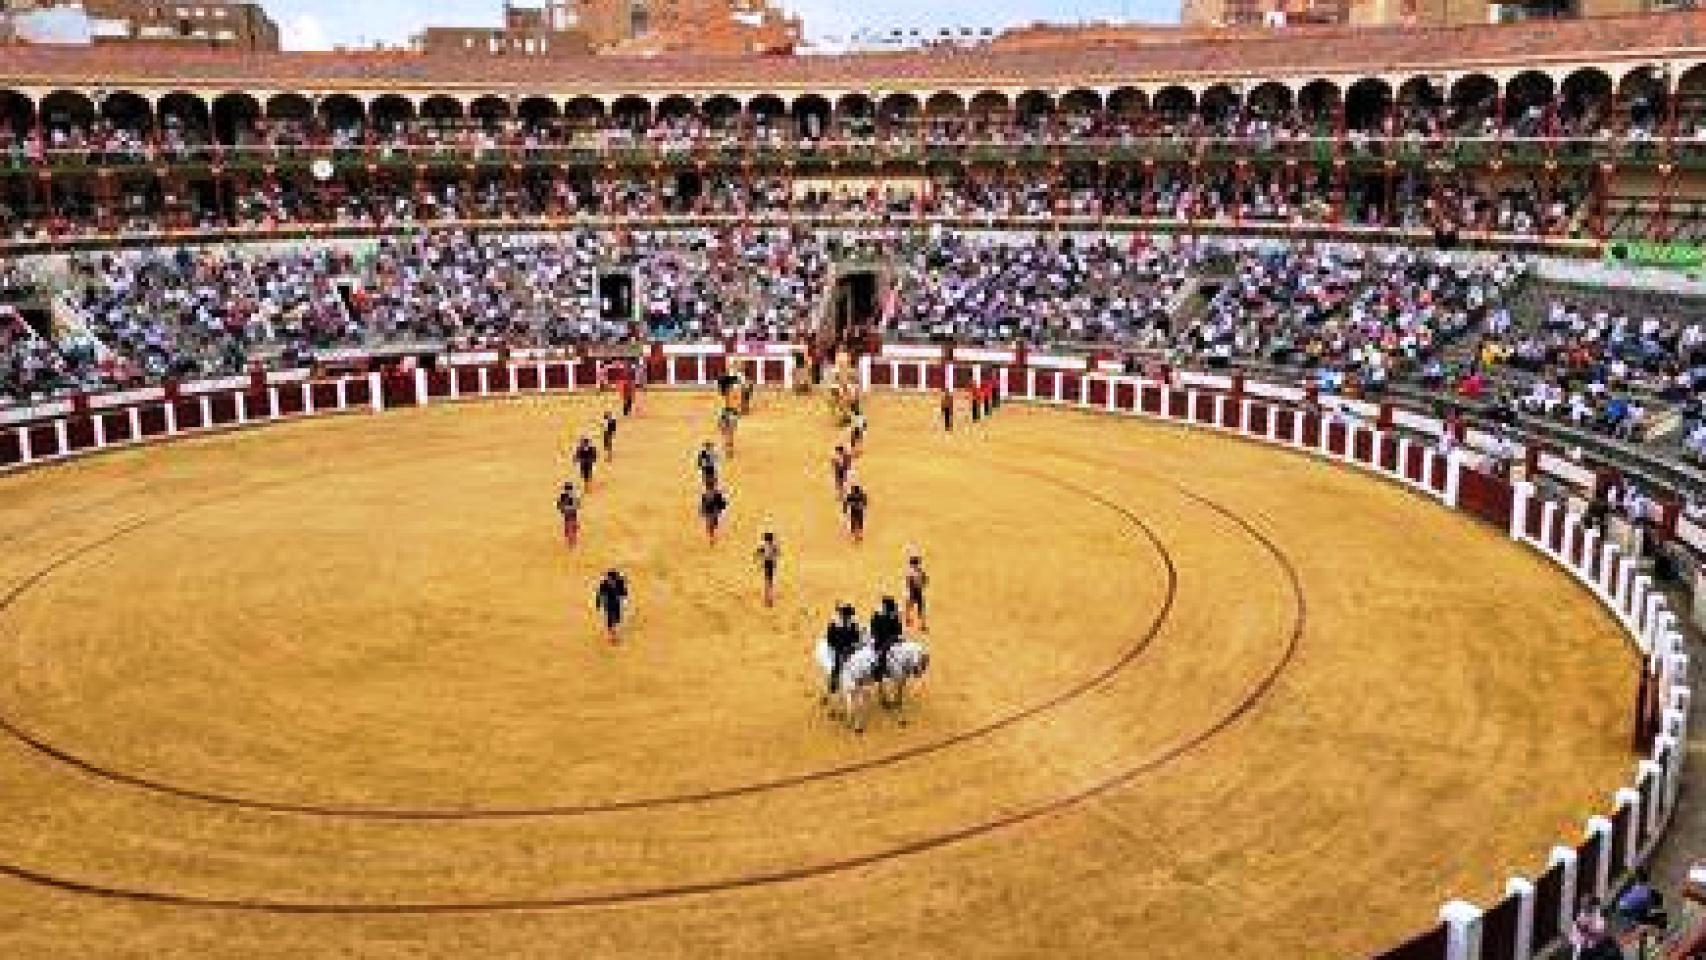 Plaza de toros de Valladolid